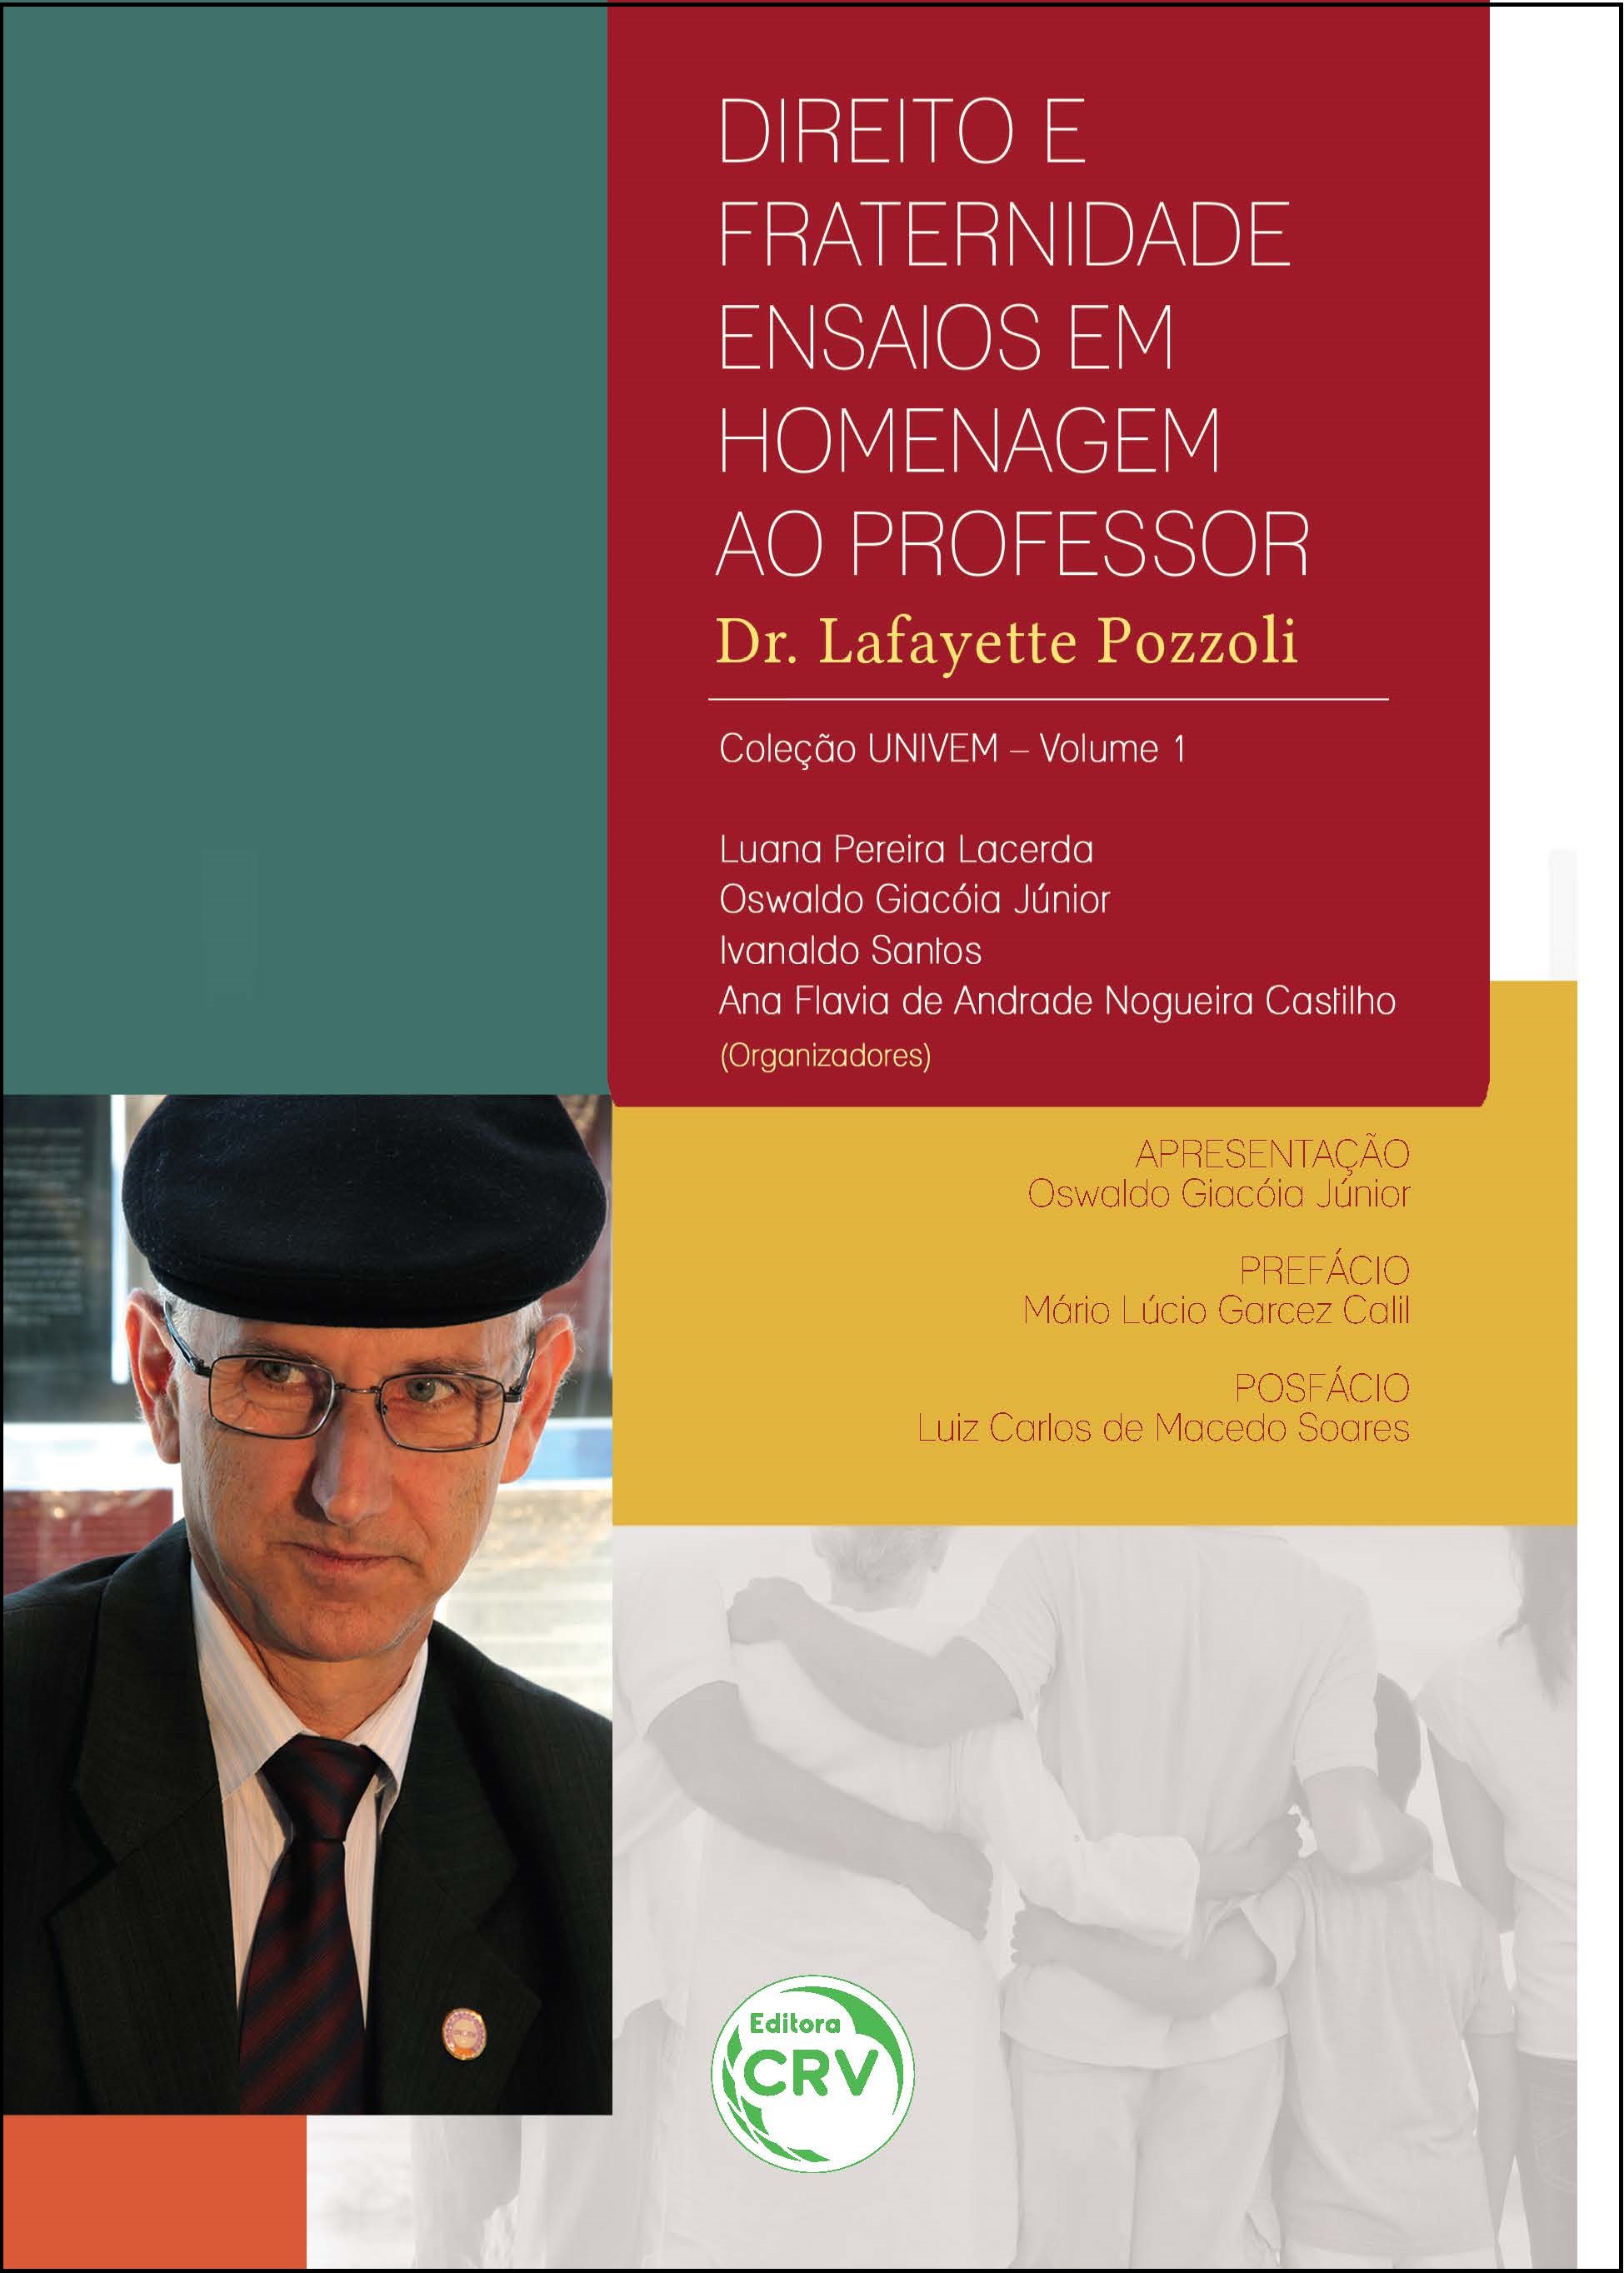 DIREITO E FRATERNIDADE:<br>ensaios em homenagem ao Professor Dr. Lafayette Pozzoli